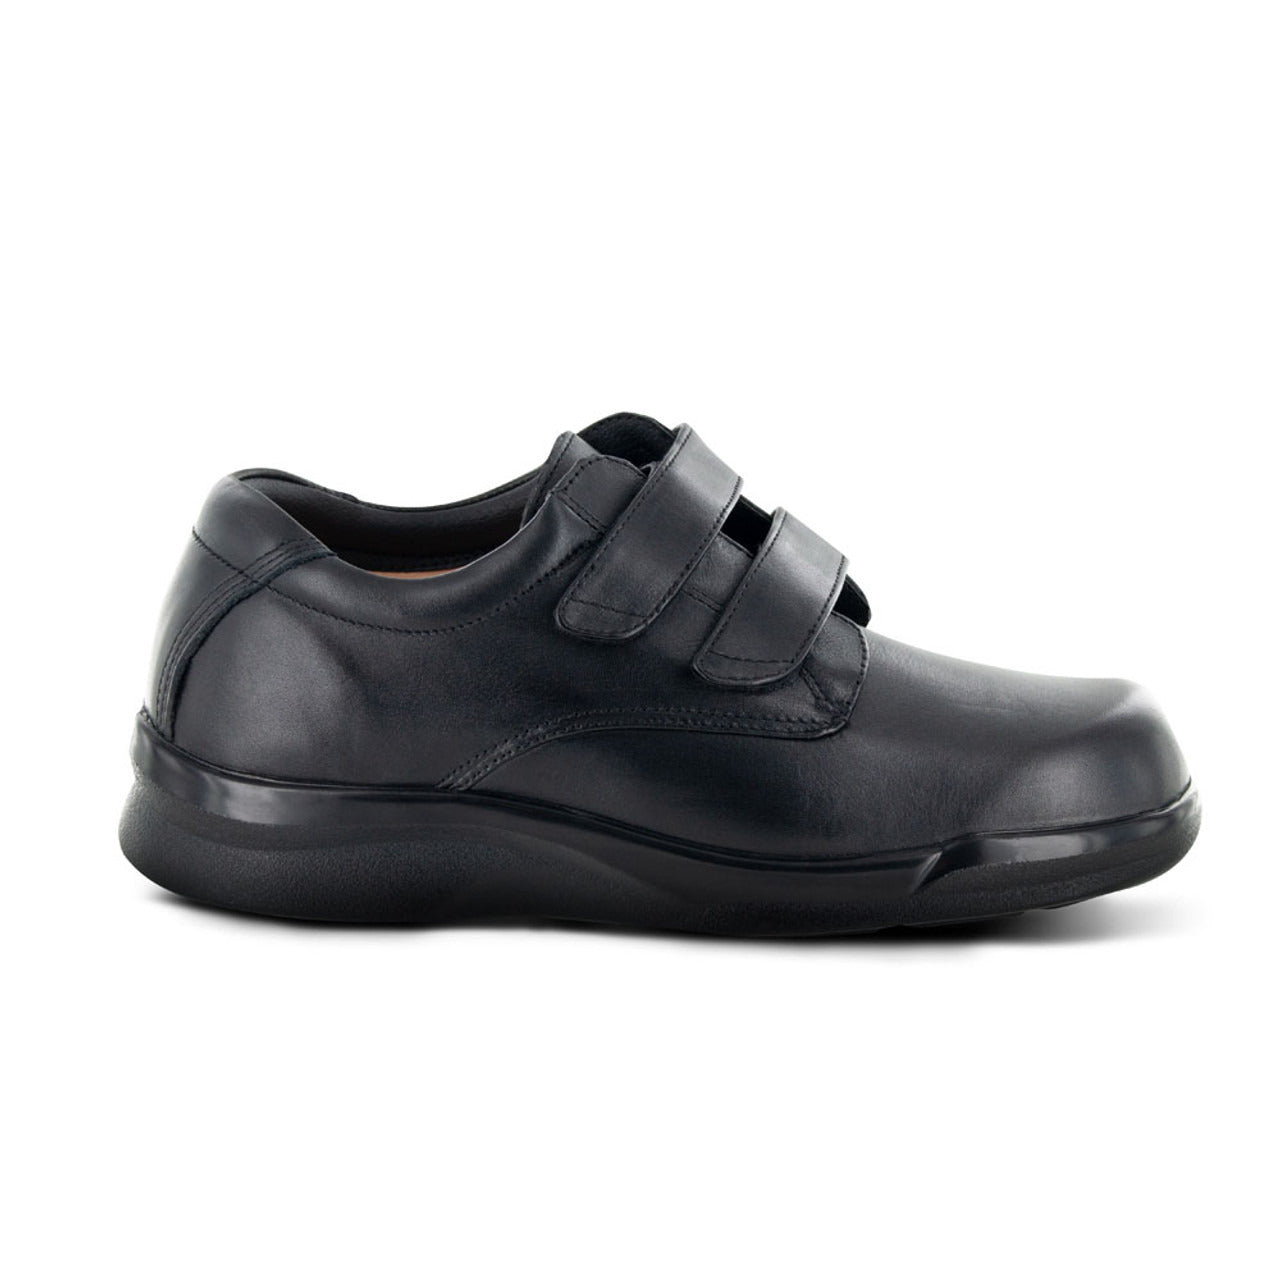 Apexfoot Men's Conform Double Strap Casual Shoe - Black - X-Wide (4E)